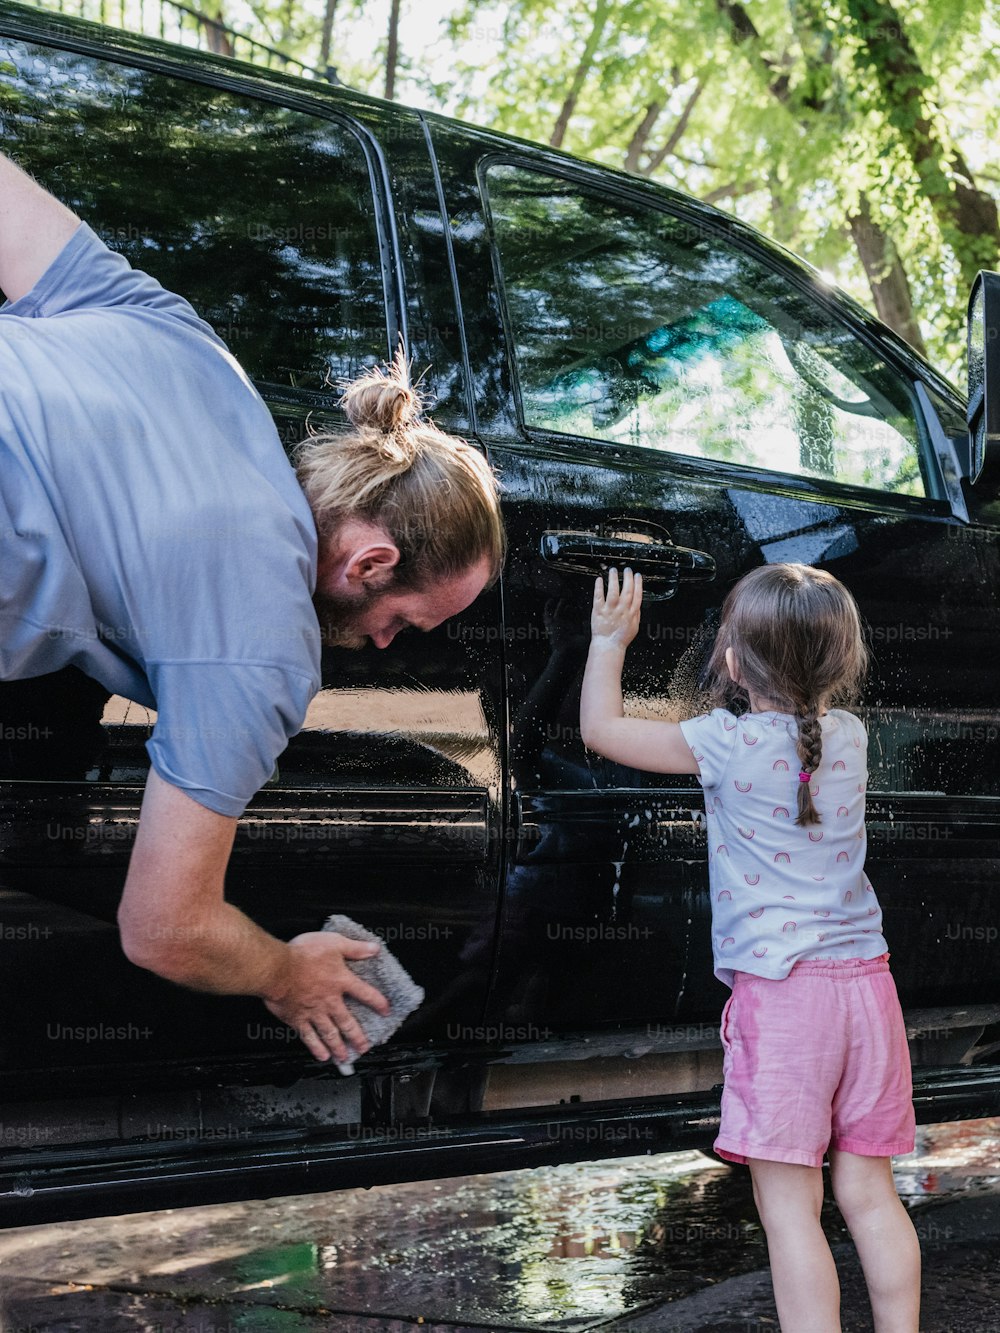 Un homme aide une petite fille à sortir d’une camionnette noire